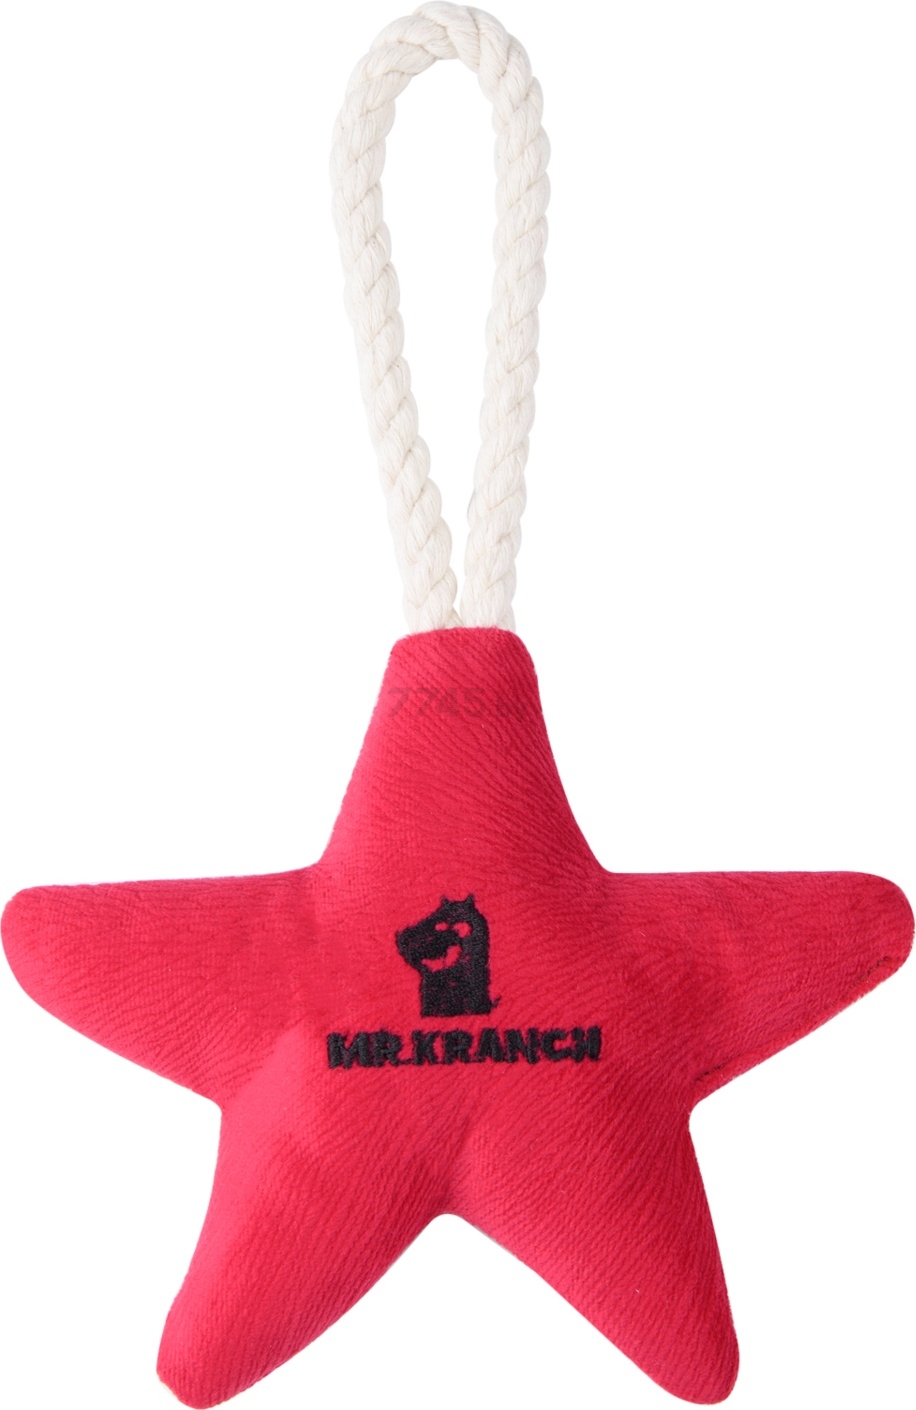 Игрушка для собак MR.KRANCH Звездочка с канатом и пищалкой 26х16х5 см ярко-розовый (MKR80258) - Фото 2